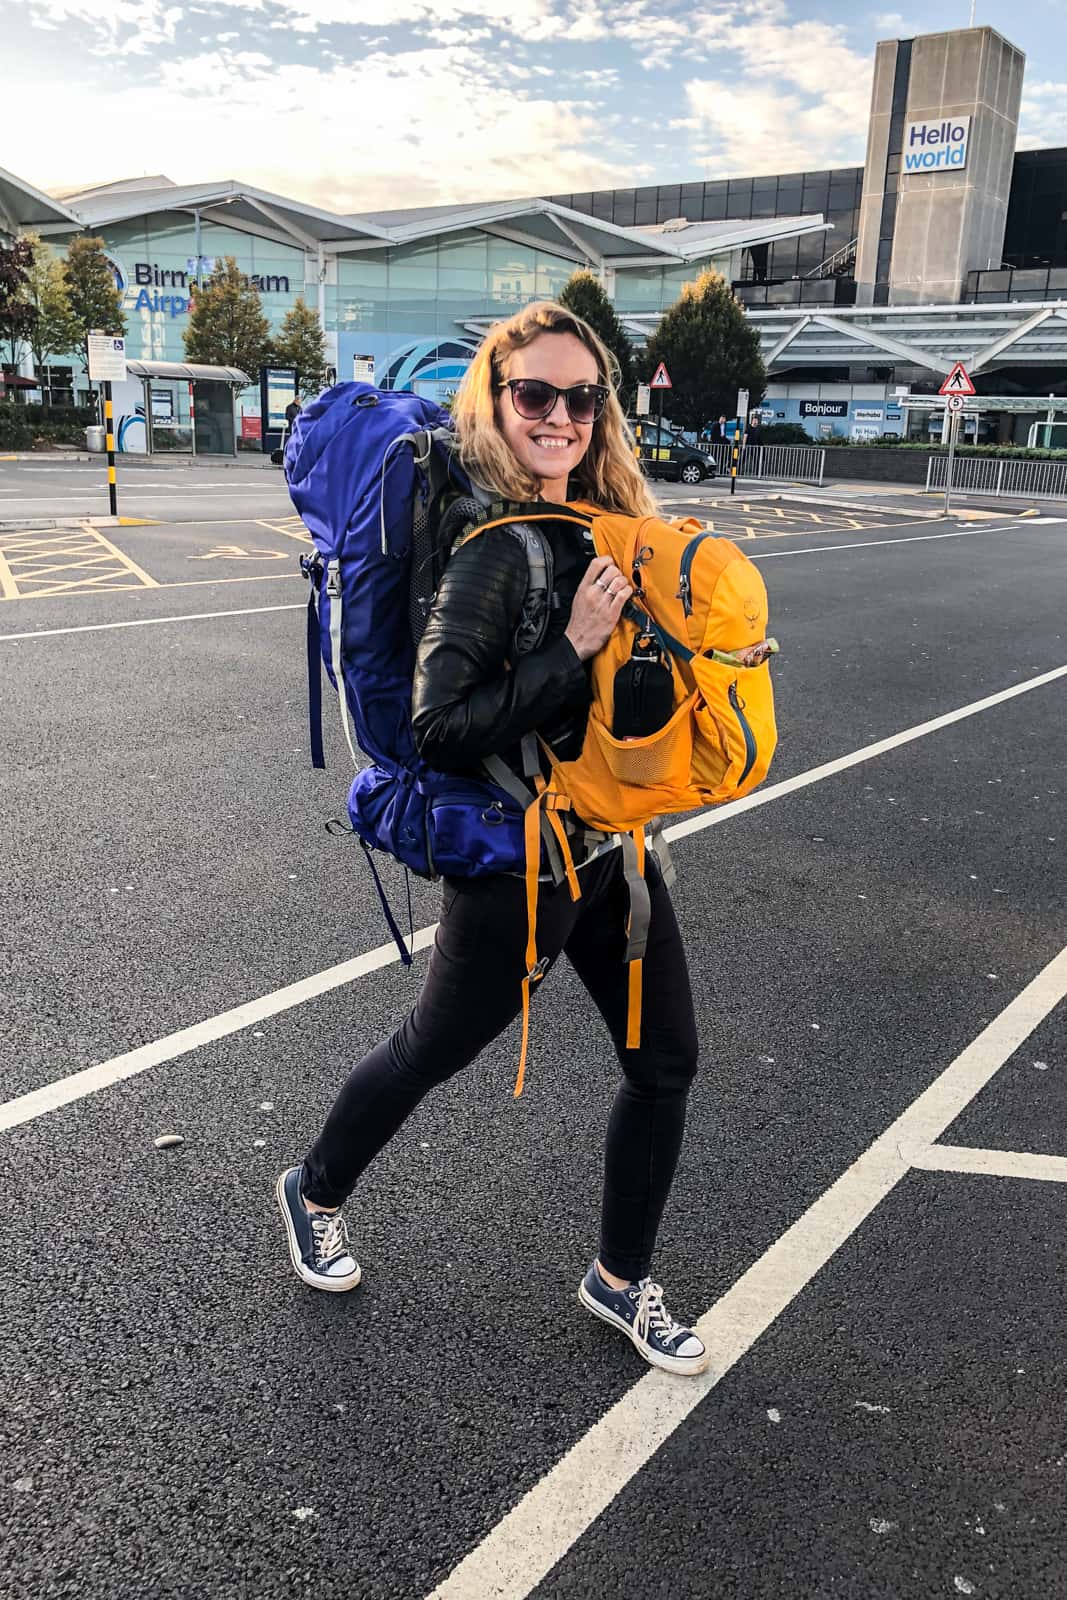 Using Osprey Backpacks for adventure travel